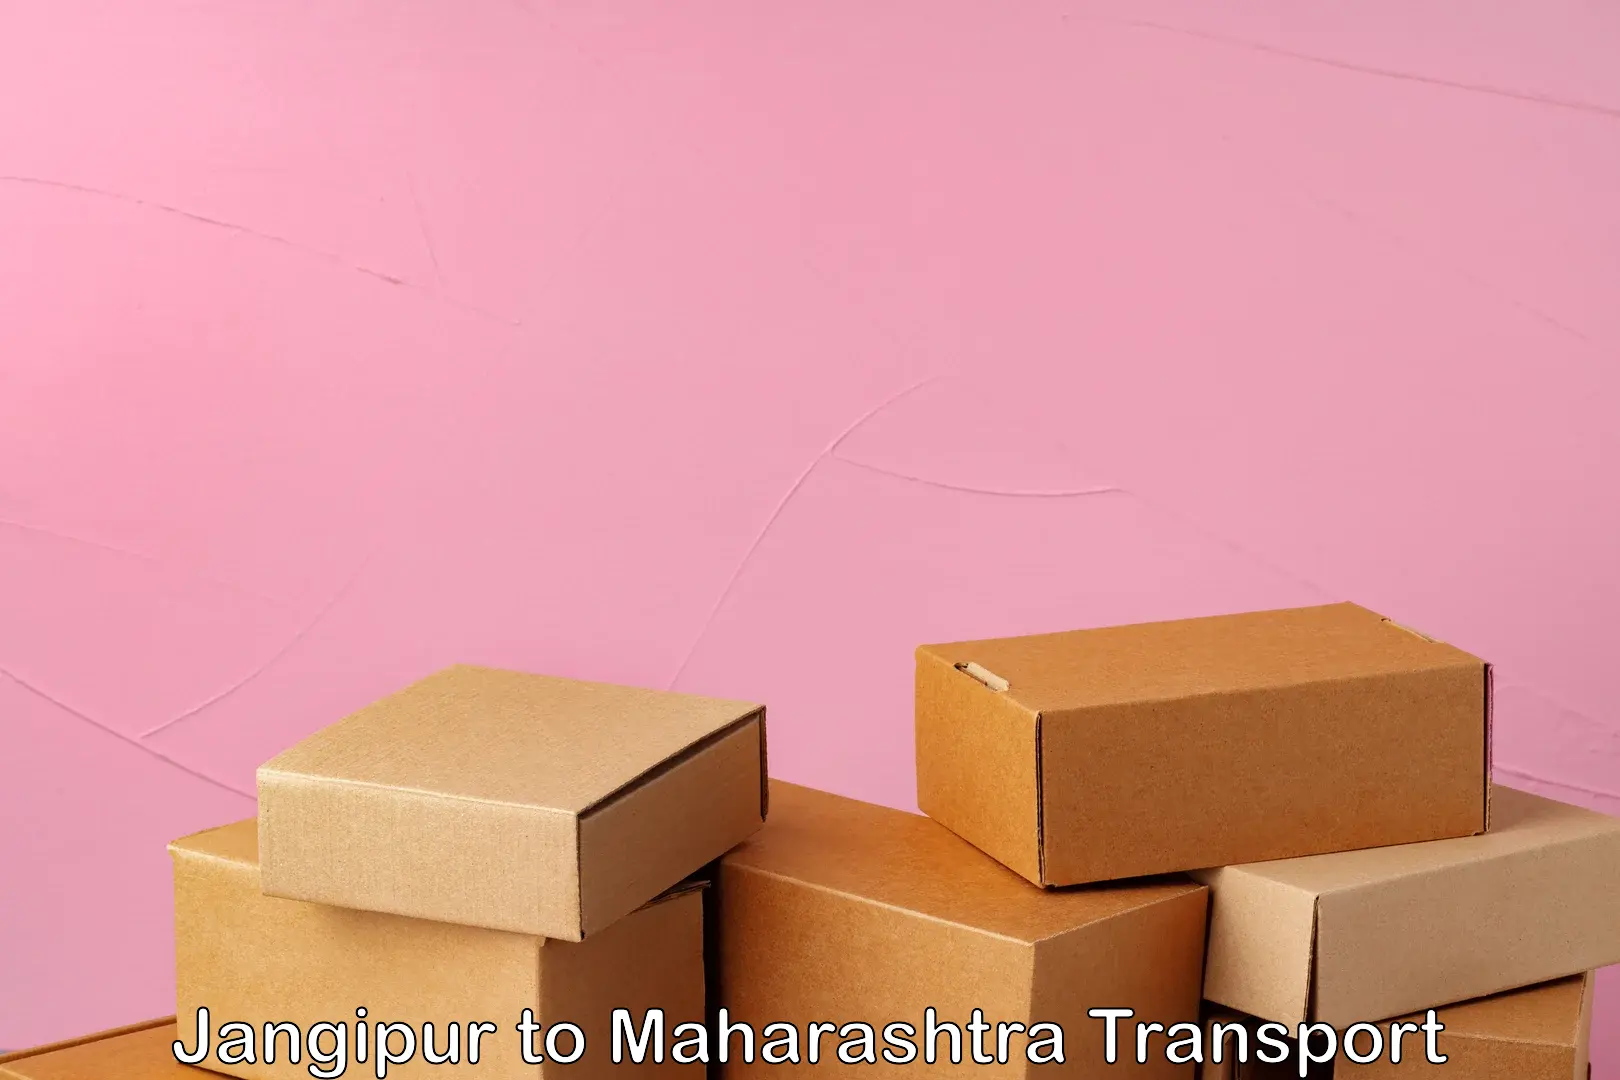 Express transport services Jangipur to Maharashtra